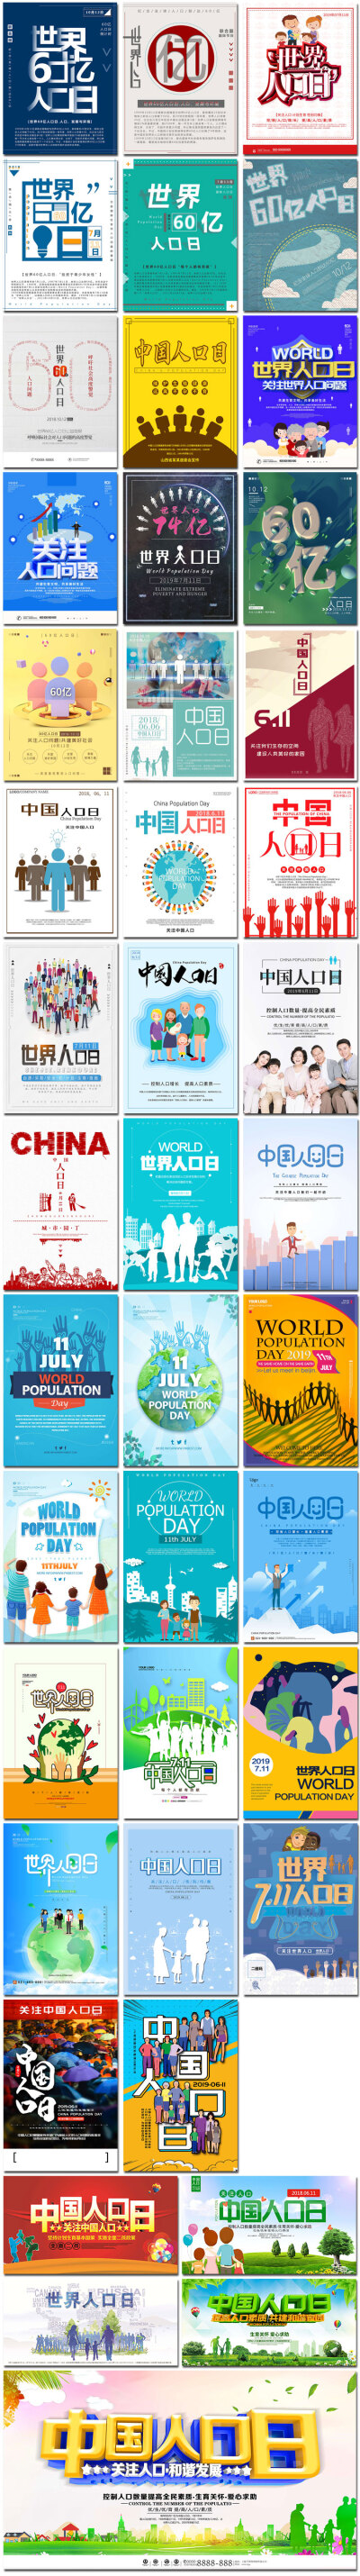 世界中国人口日控制人口调查公益展板插图画海报psd模板设计素材